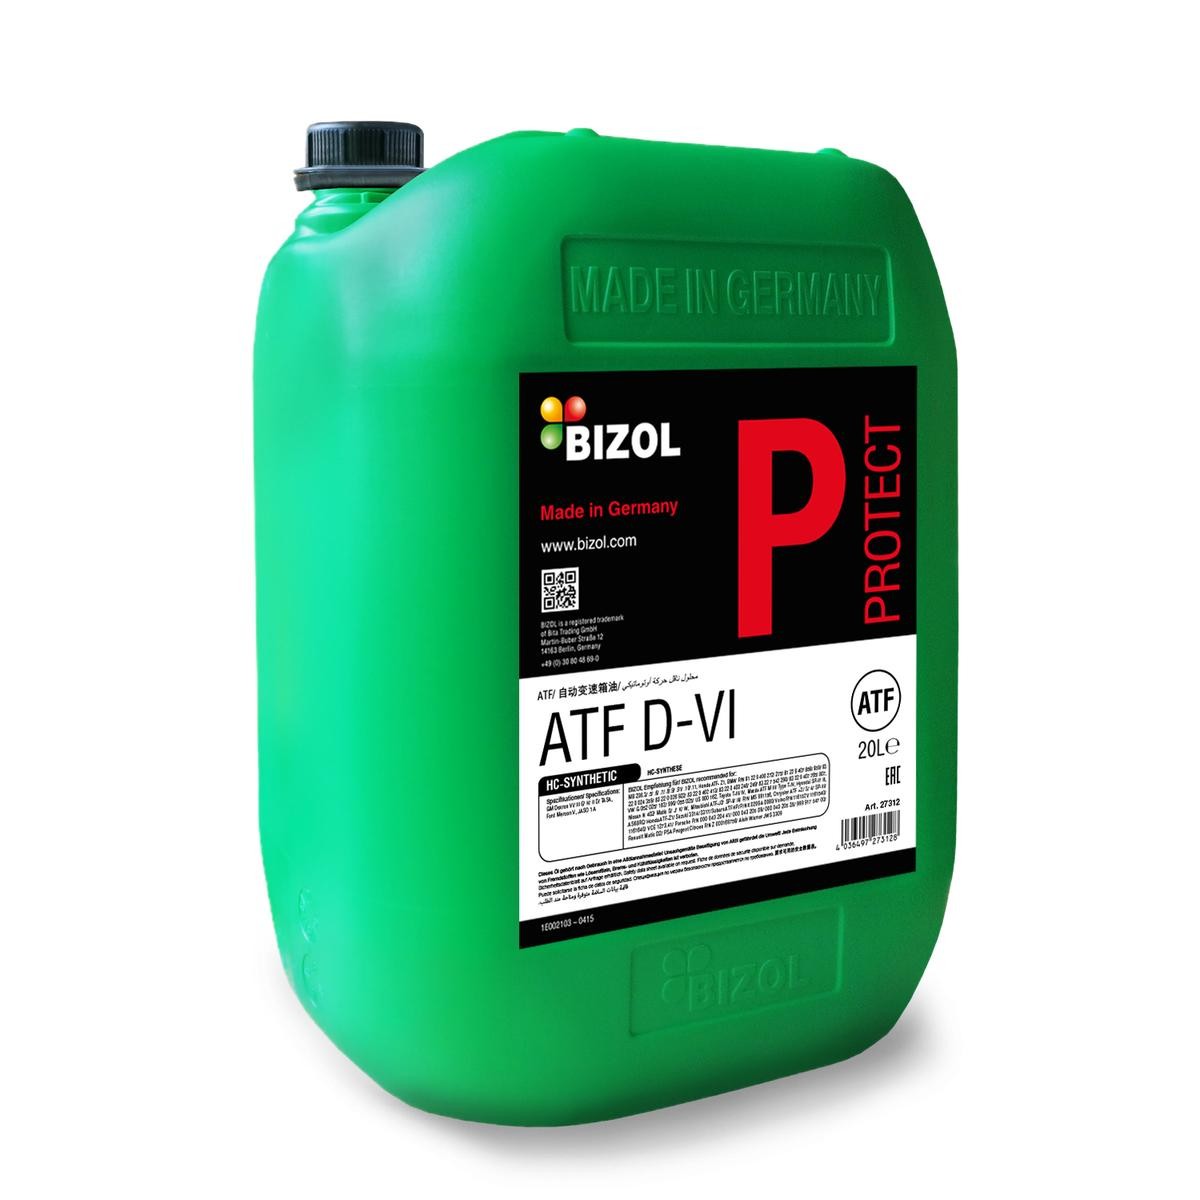 BIZOL Protect, ATF D-VI 27312 Olio cambio automatico (ATF)